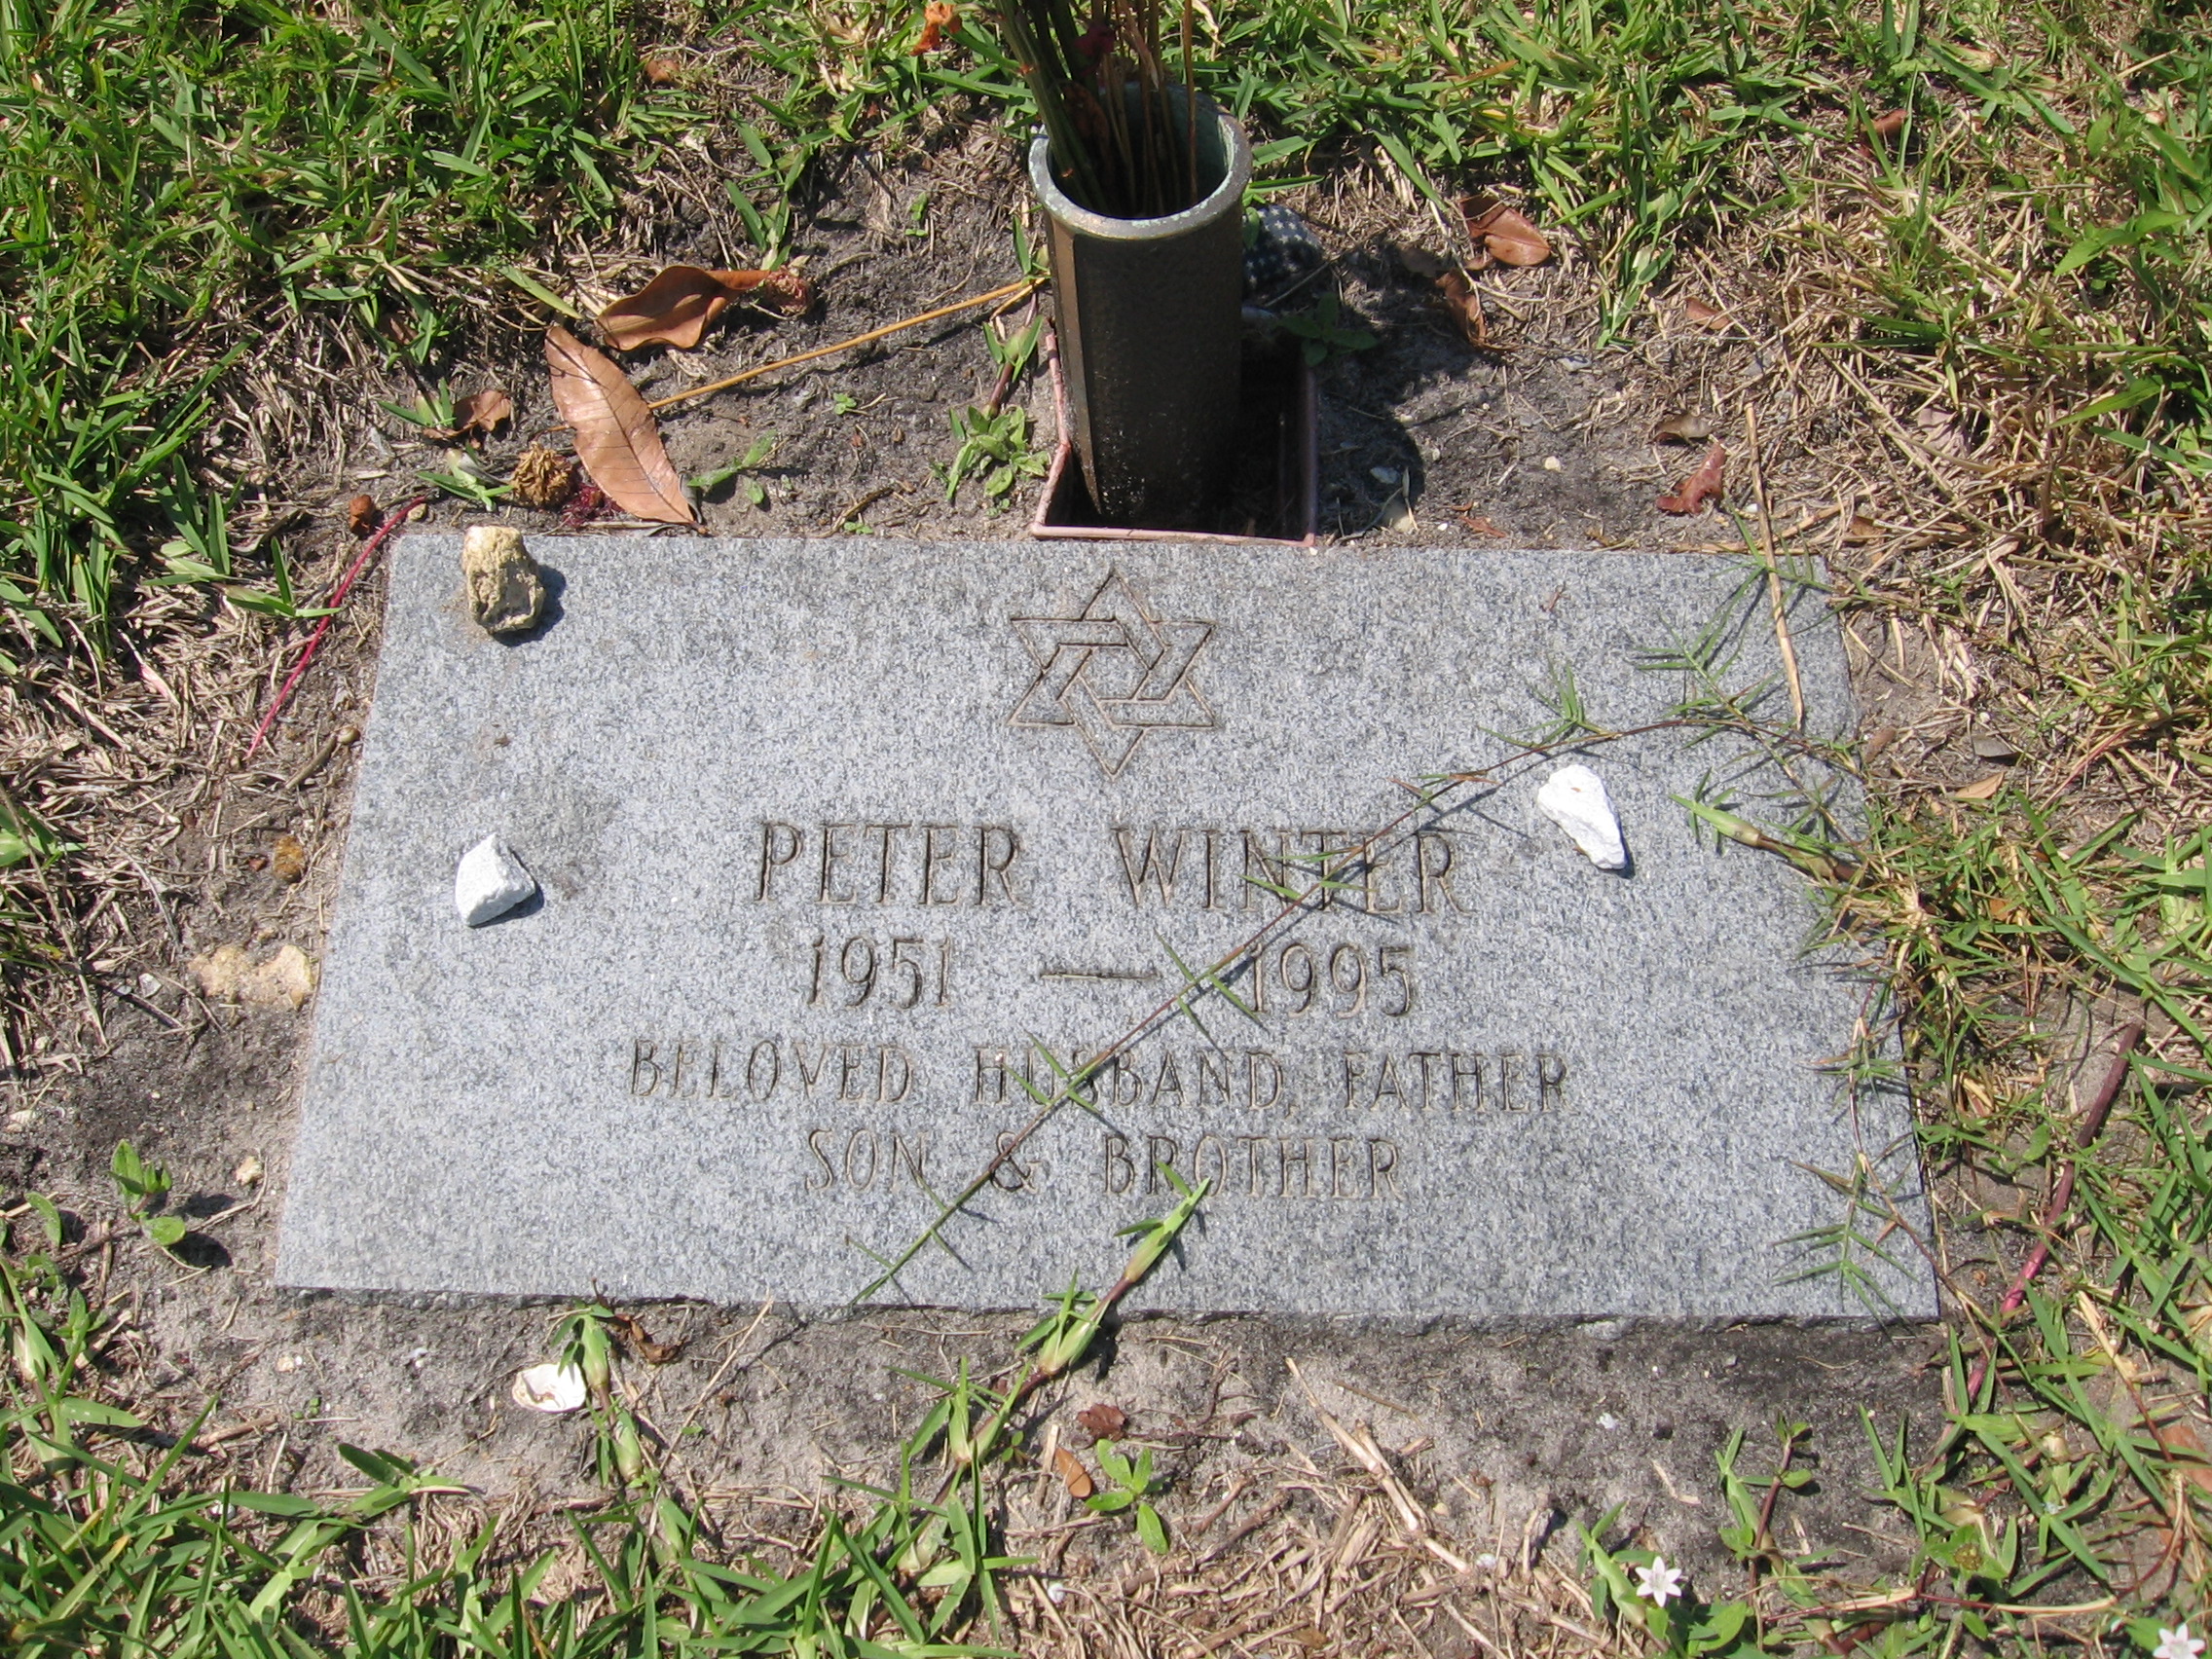 Peter Winter